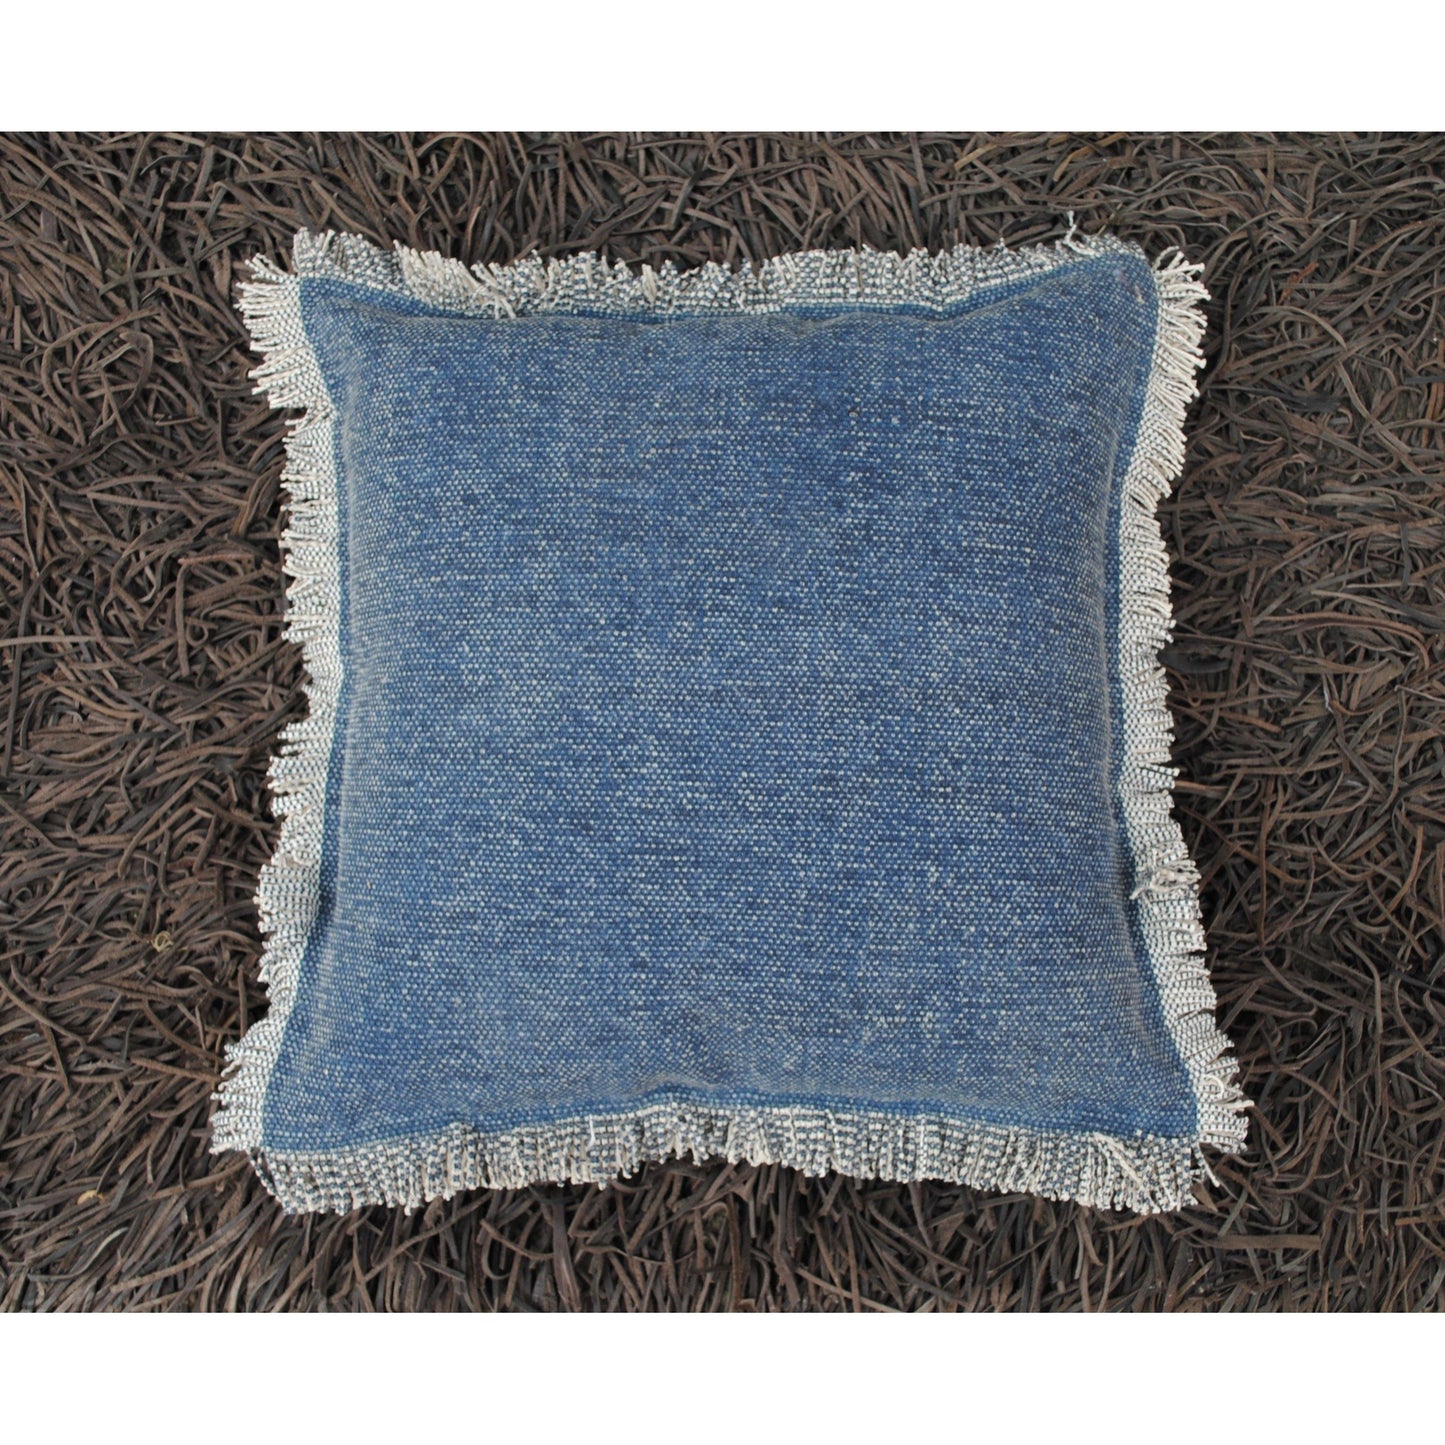 18 " Rugged Cushion Cover 18 "-Blue - The Teal Thread